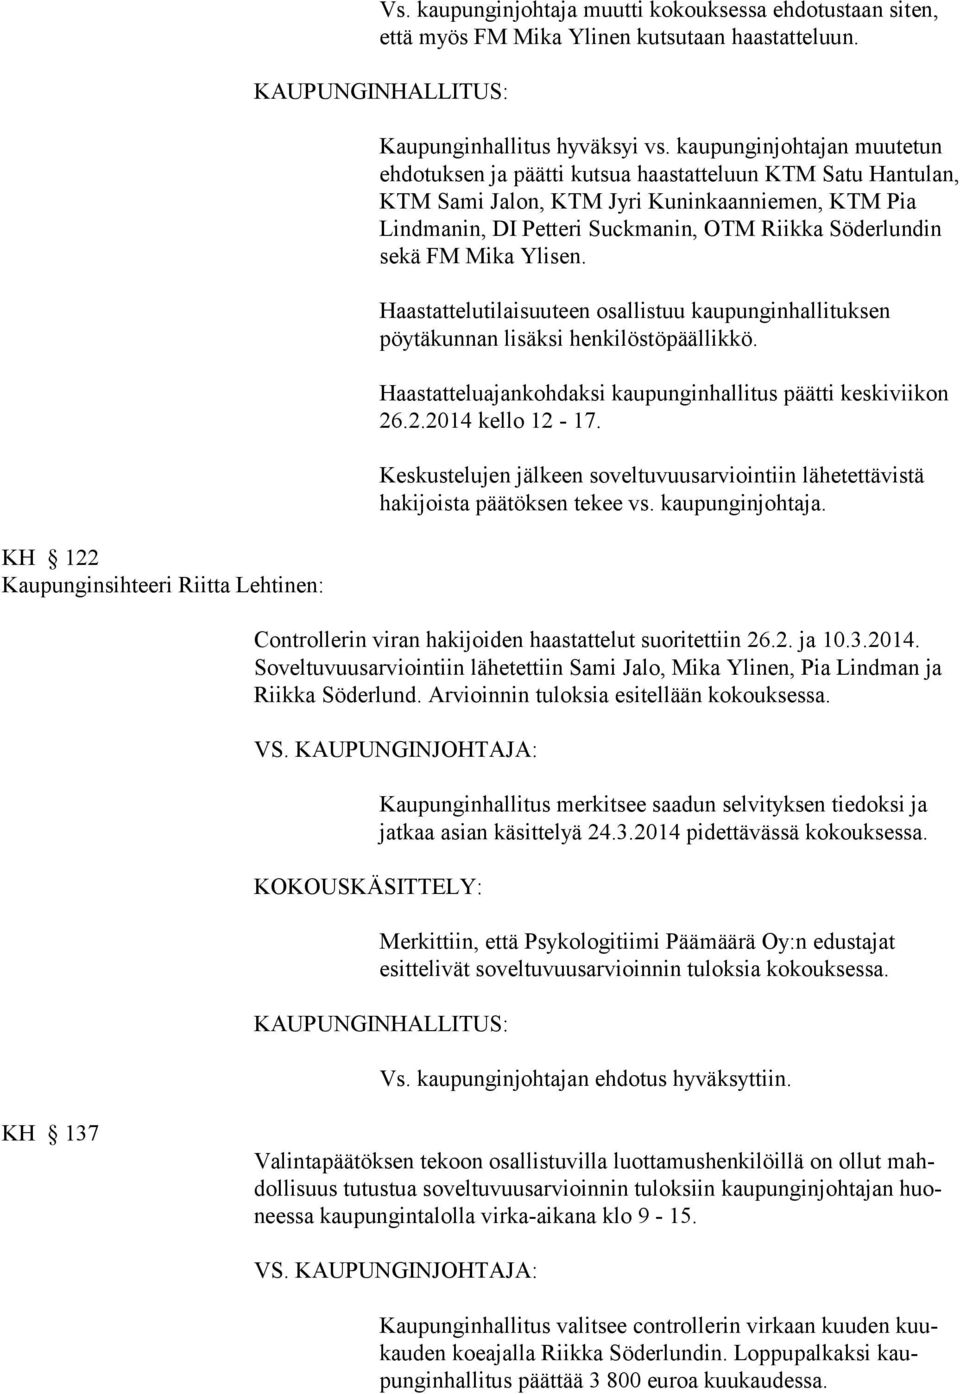 FM Mika Ylisen. Haastattelutilaisuuteen osallistuu kaupunginhallituksen pöytäkunnan lisäksi henkilöstöpäällikkö. Haastatteluajankohdaksi kaupunginhallitus päätti keskiviikon 26.2.2014 kello 12-17.